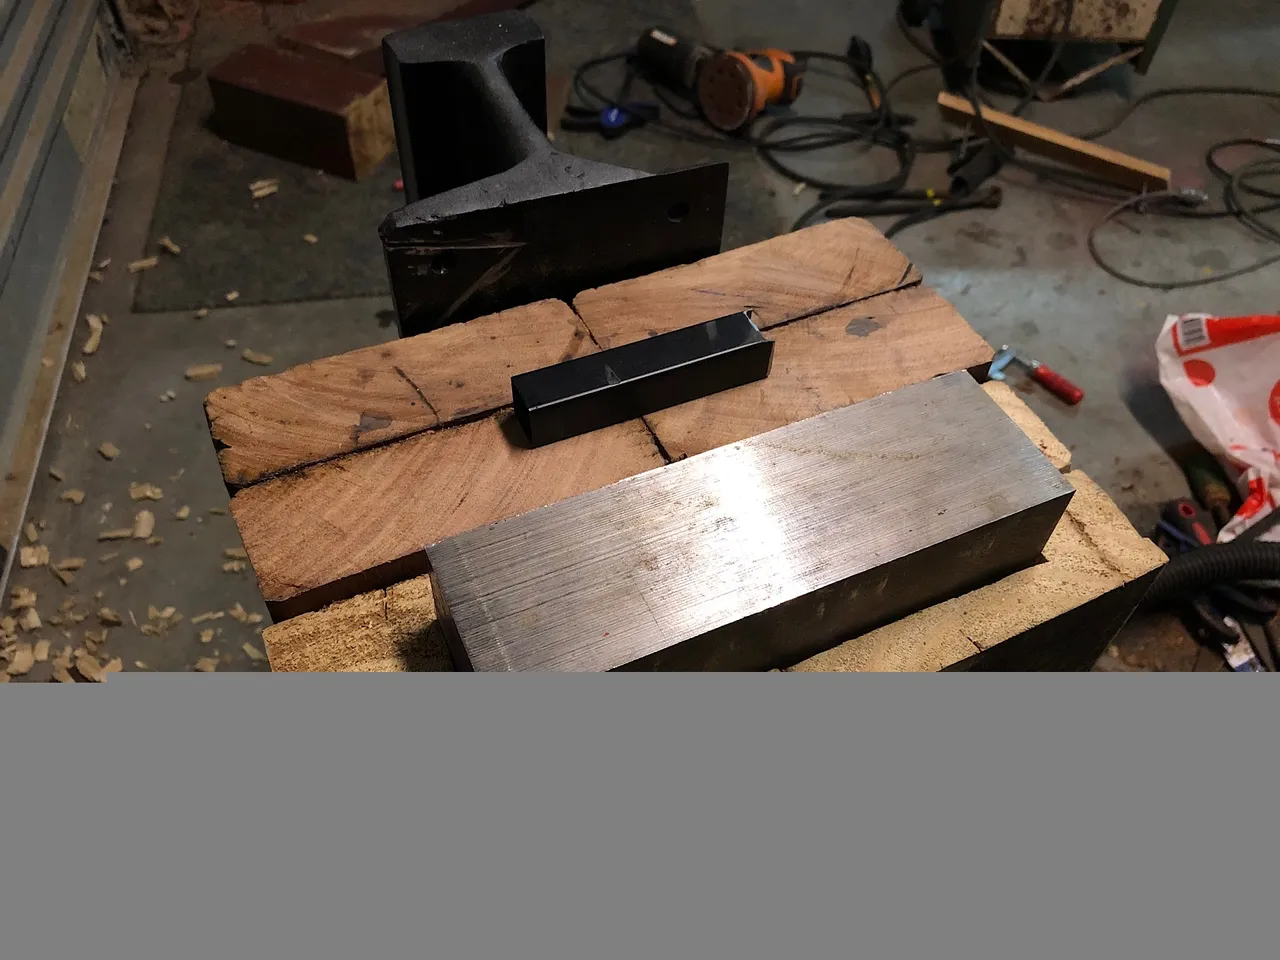 Tool steel anvil installed